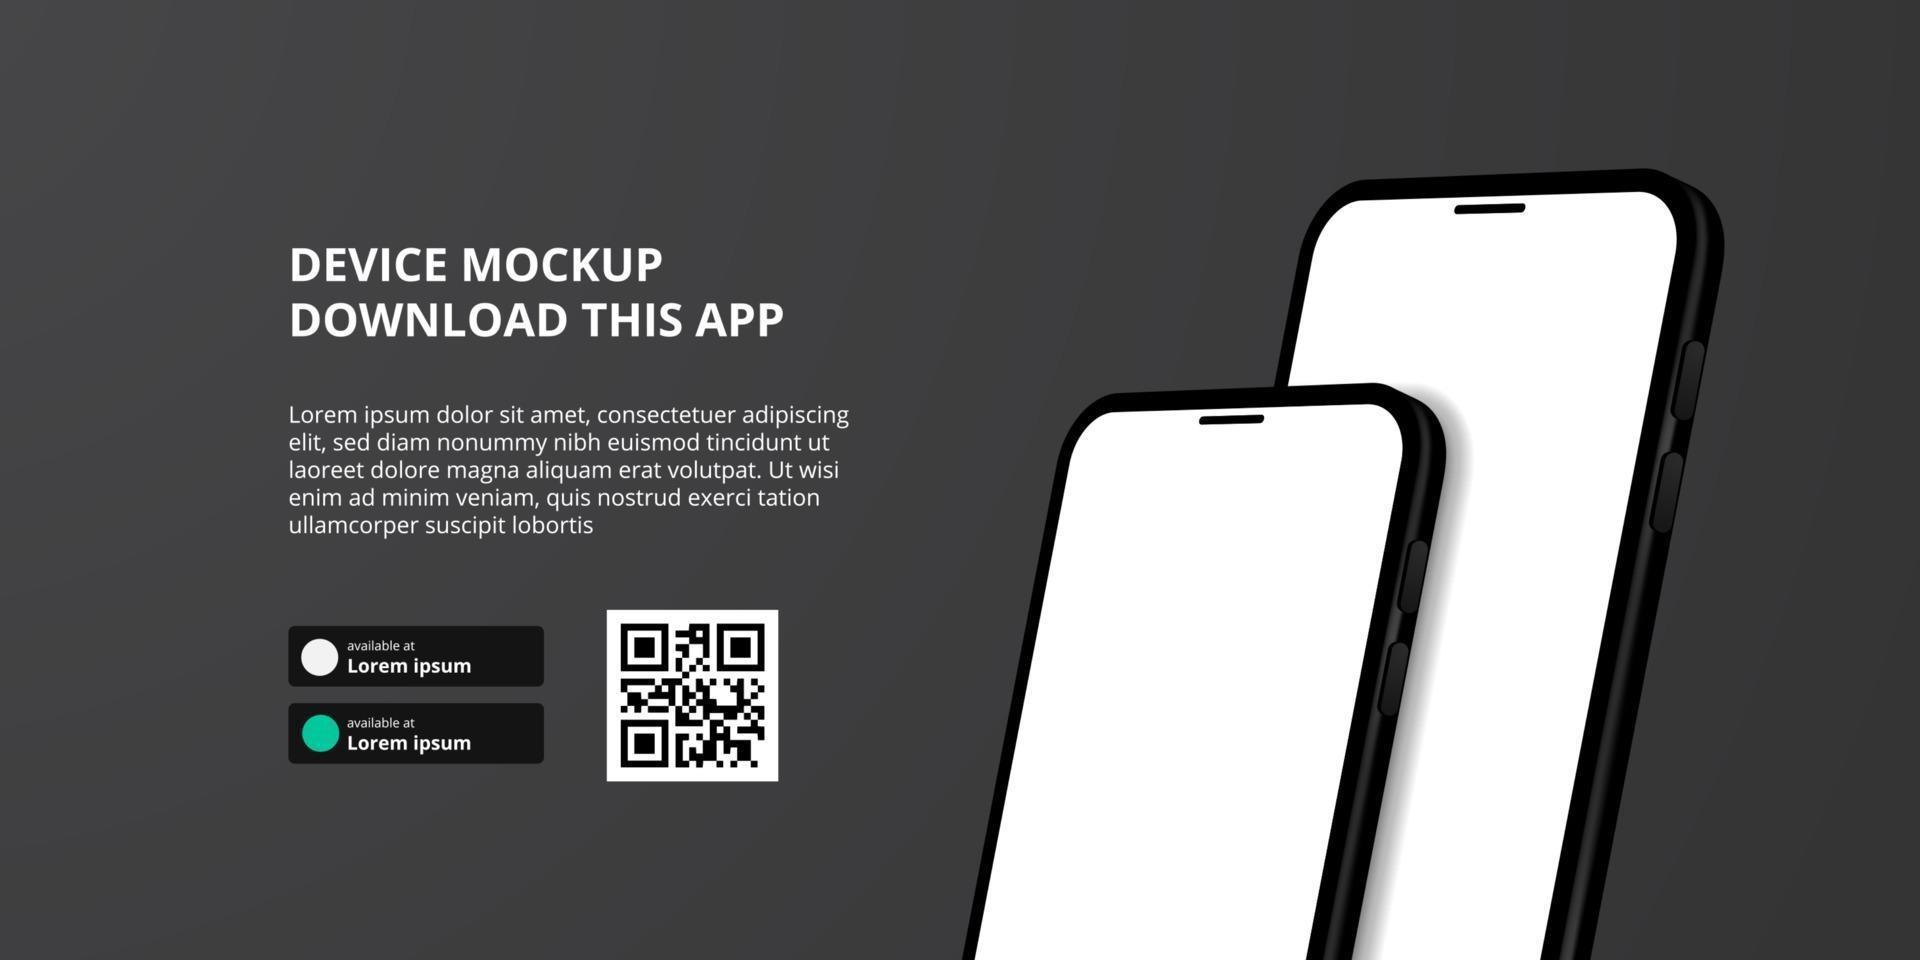 Banner zum Herunterladen der App für Mobiltelefone, 3D-Smartphone-Modell vektor